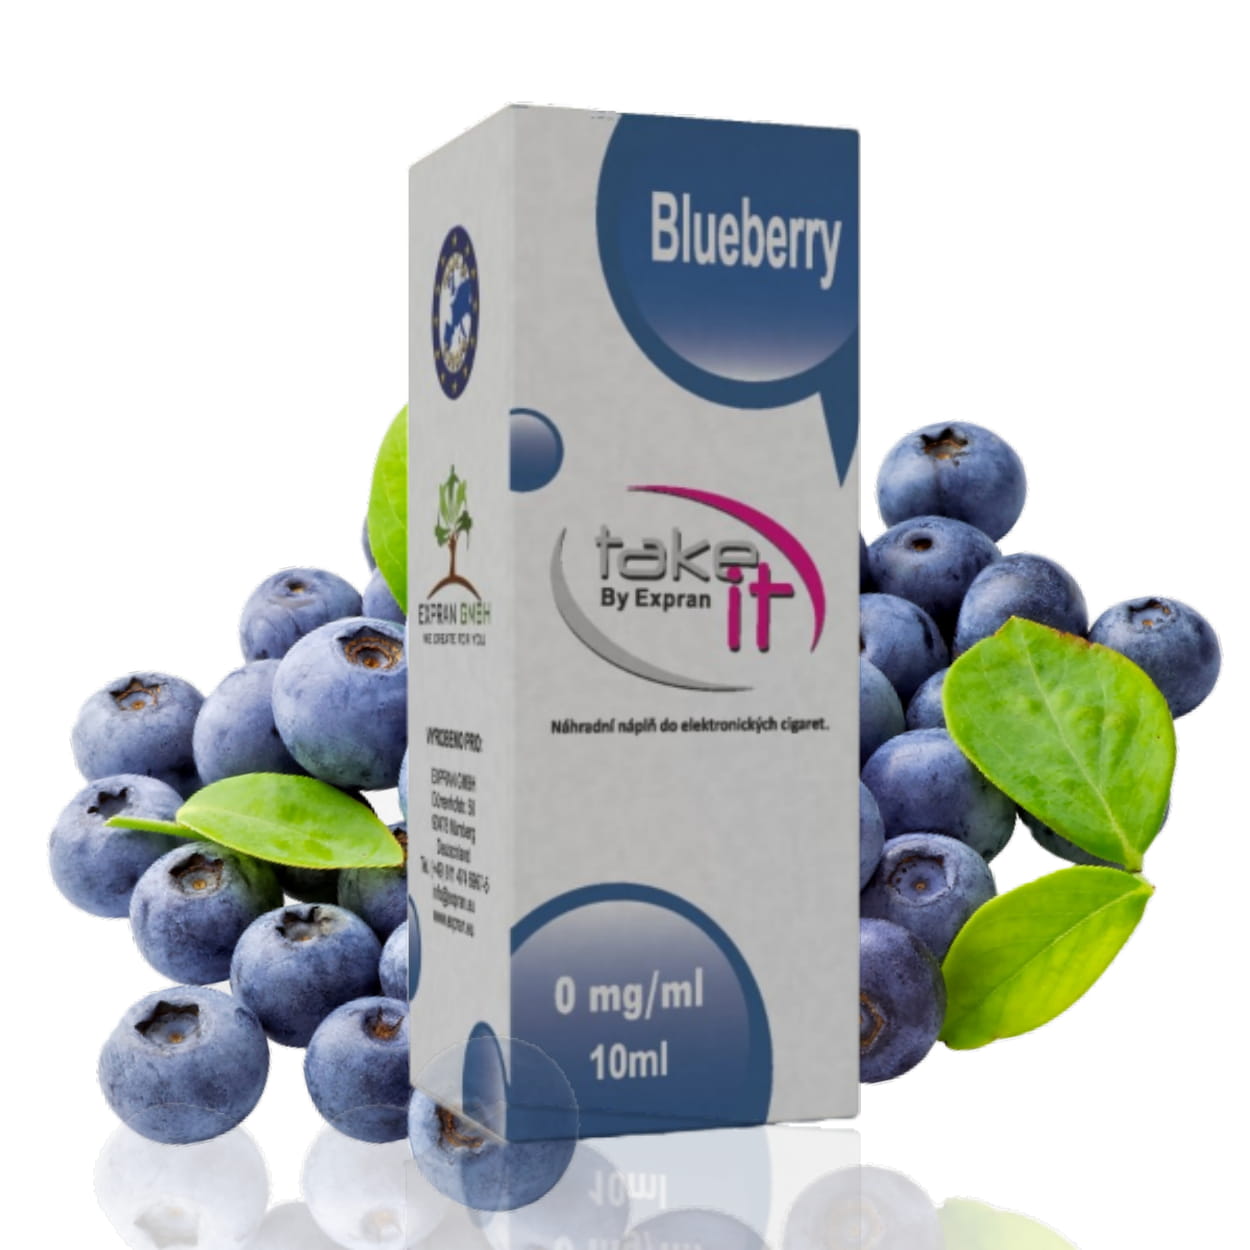 10 ml Take It - Blueberry 12 mg/ml